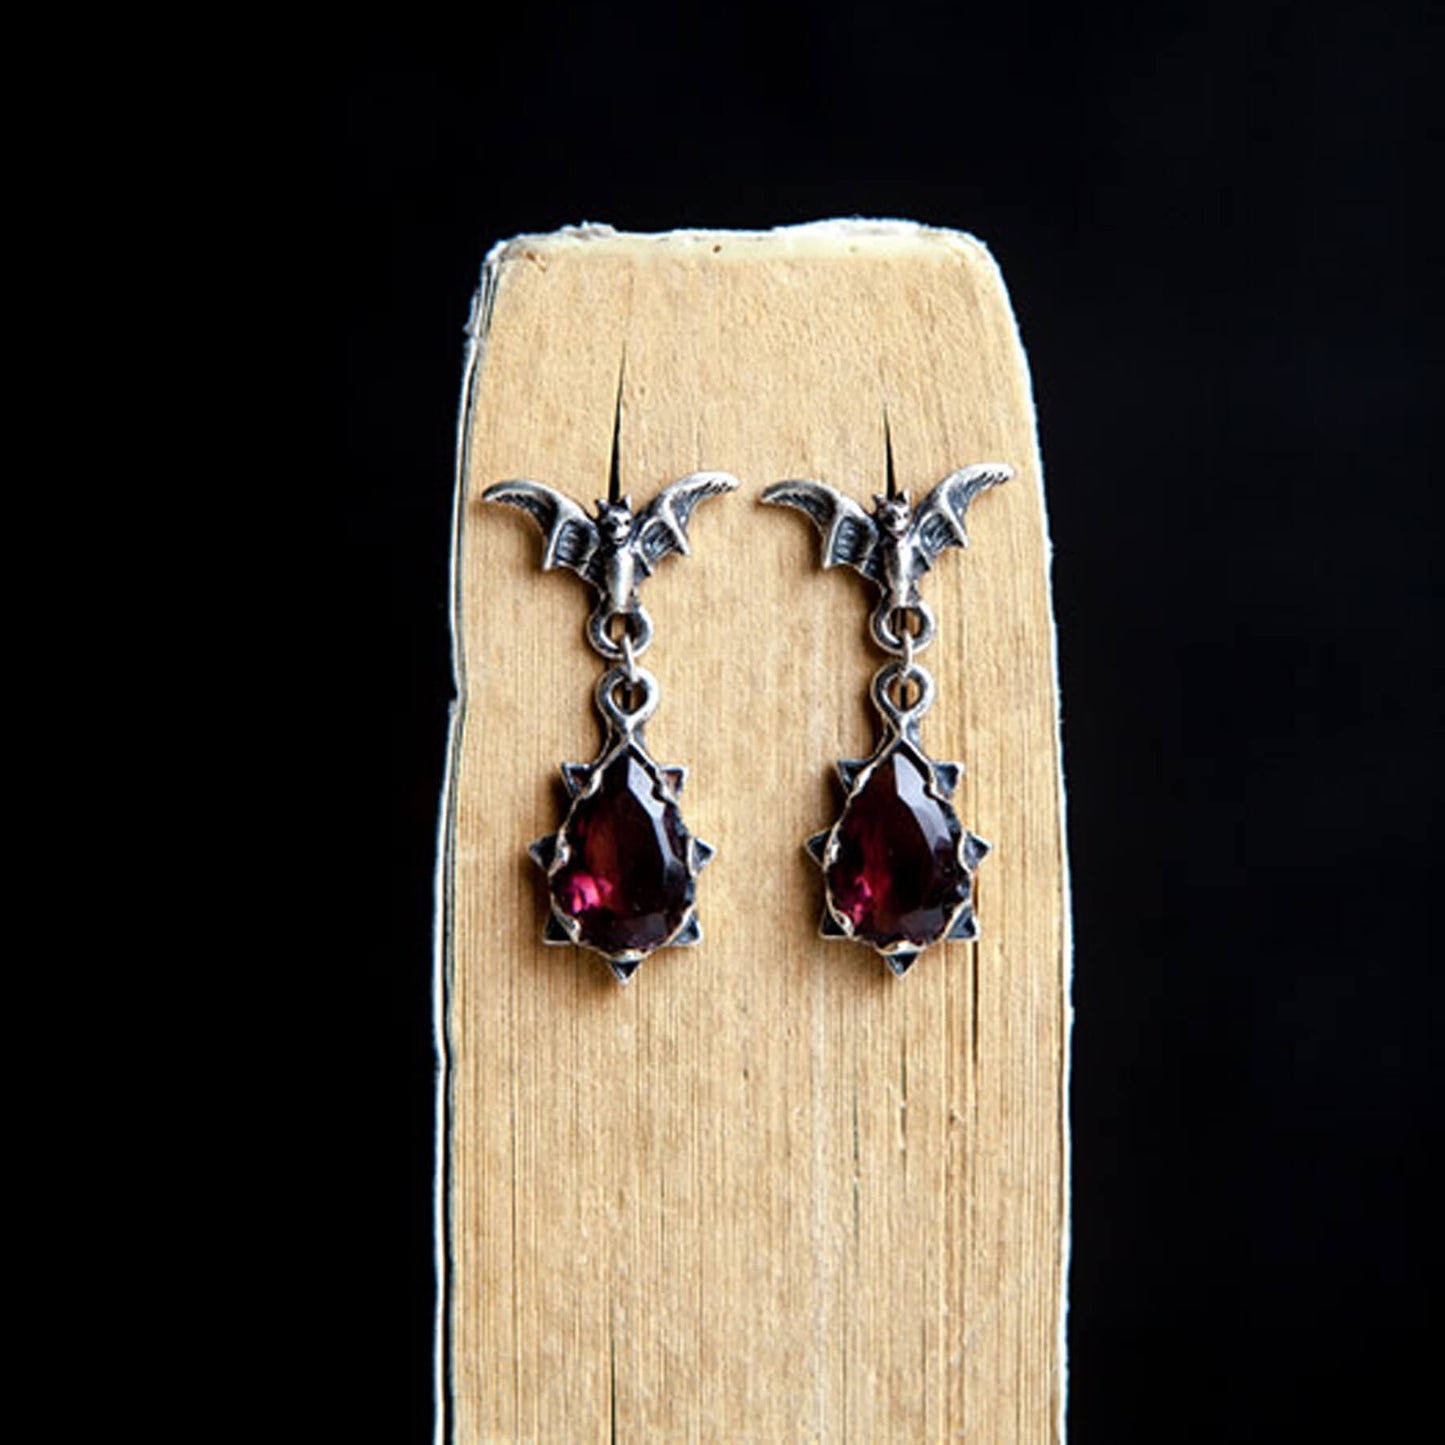 BLOOD MOON TEARDROPS - Bat Goth Earrings